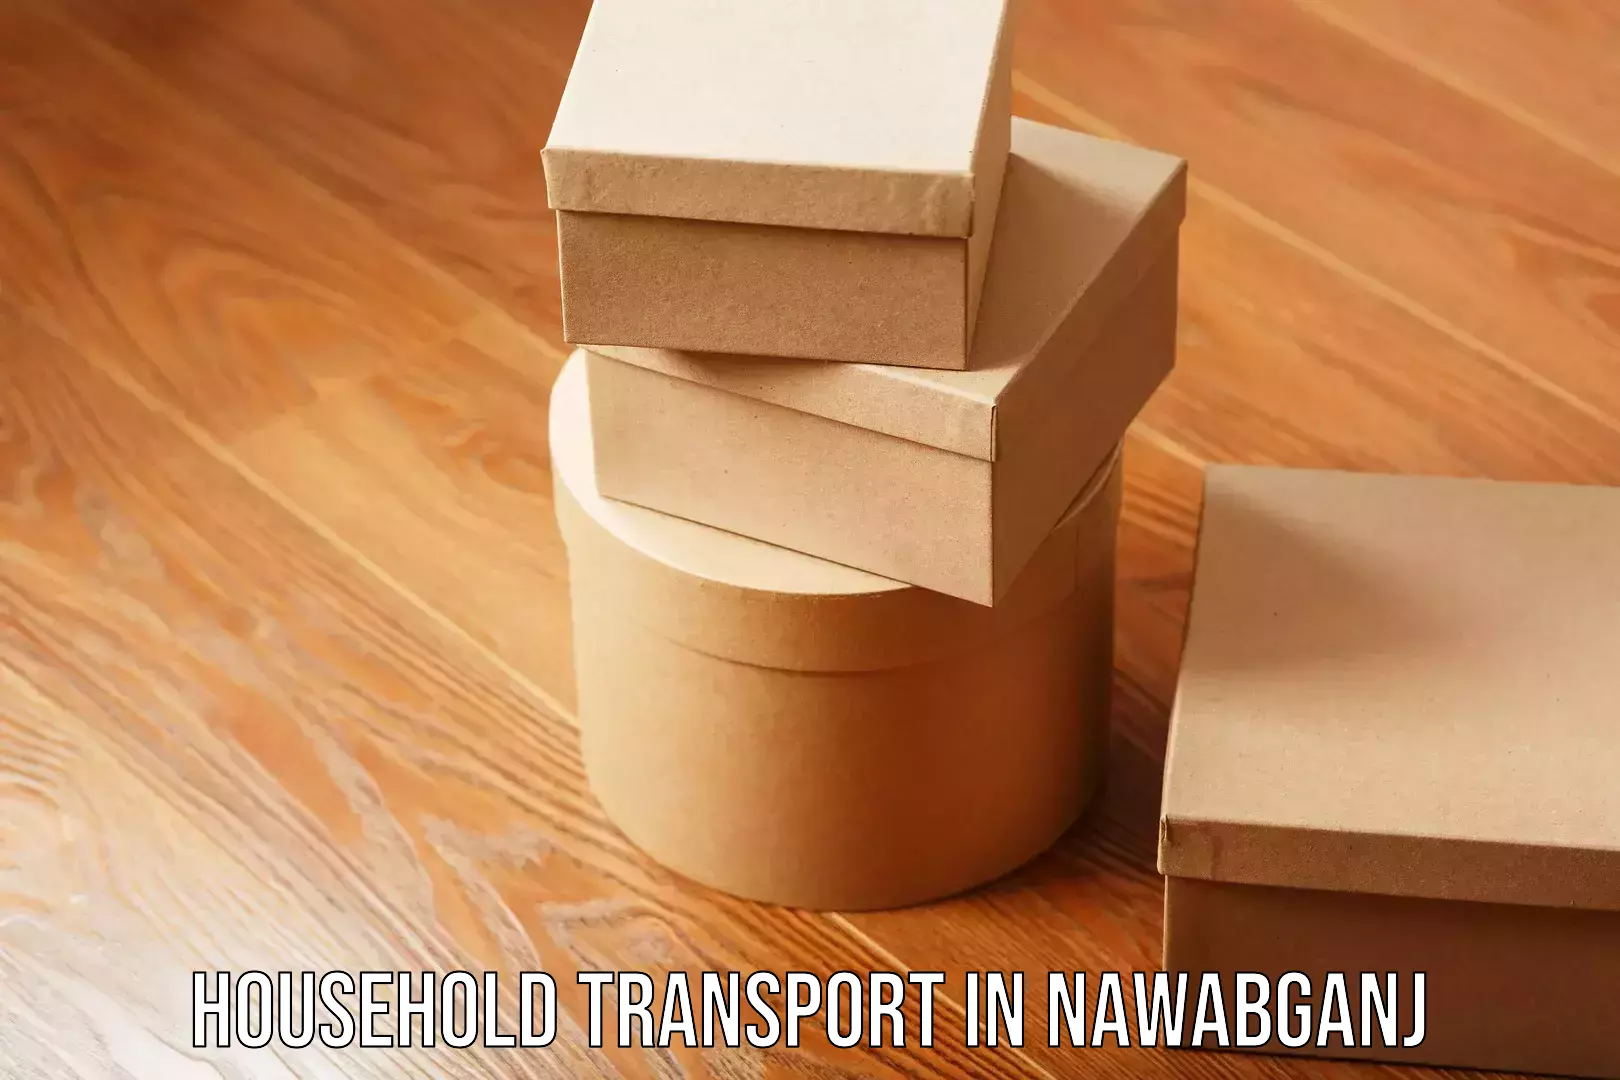 Furniture transport solutions in Nawabganj